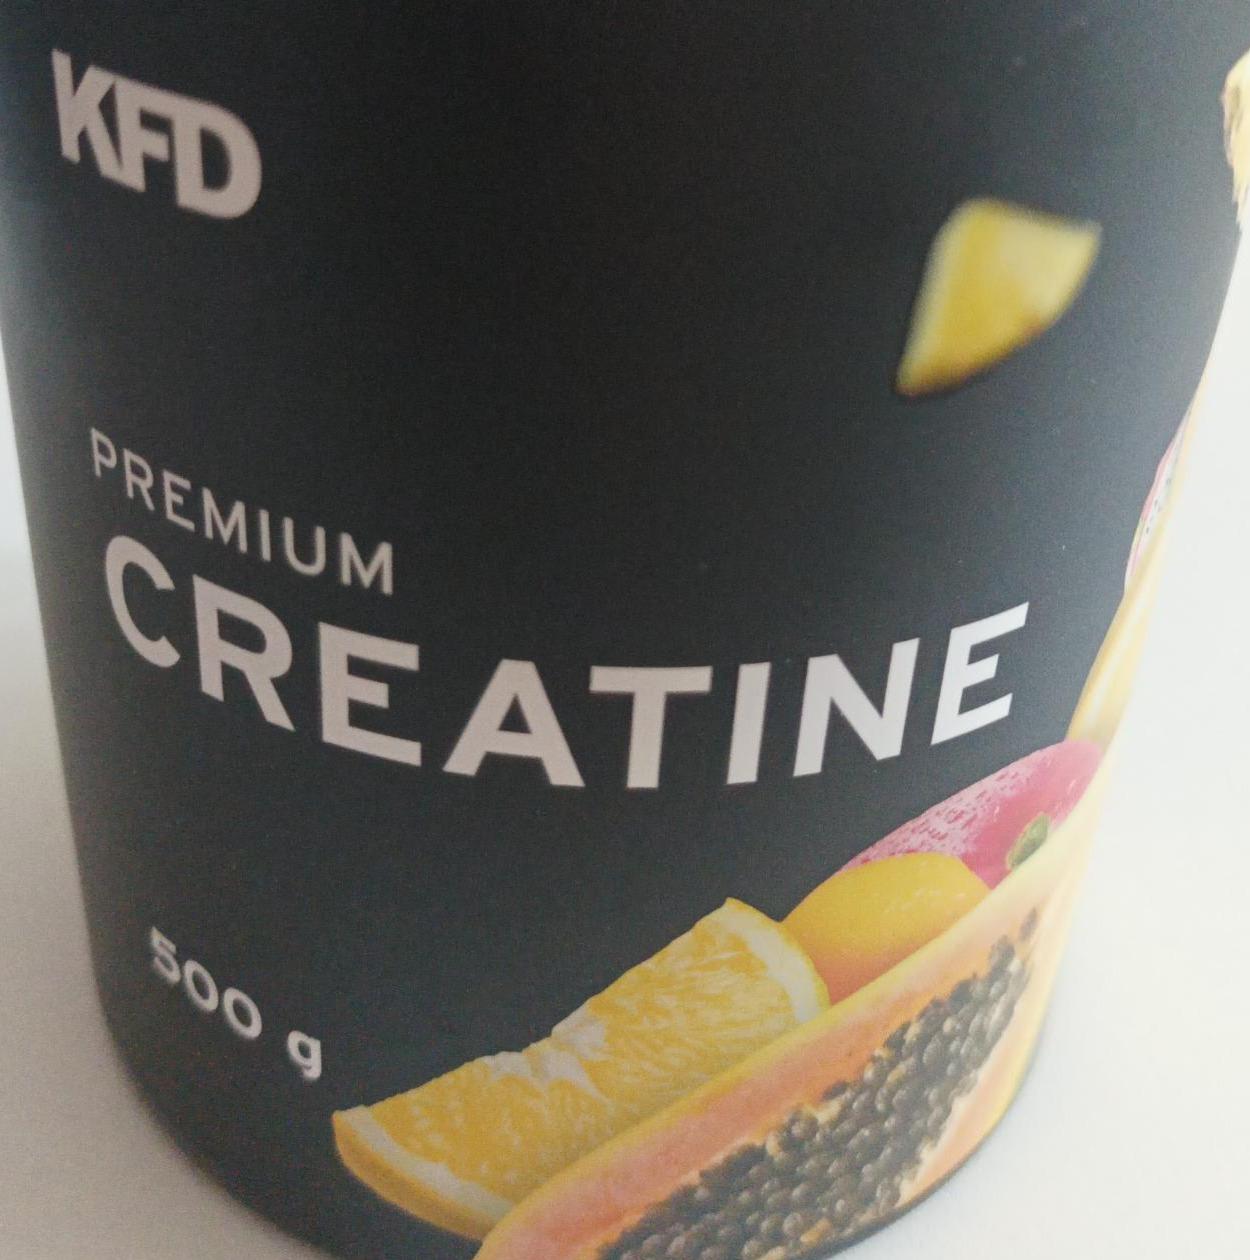 Zdjęcia - KFD Premium Creatine owoce tropikalne